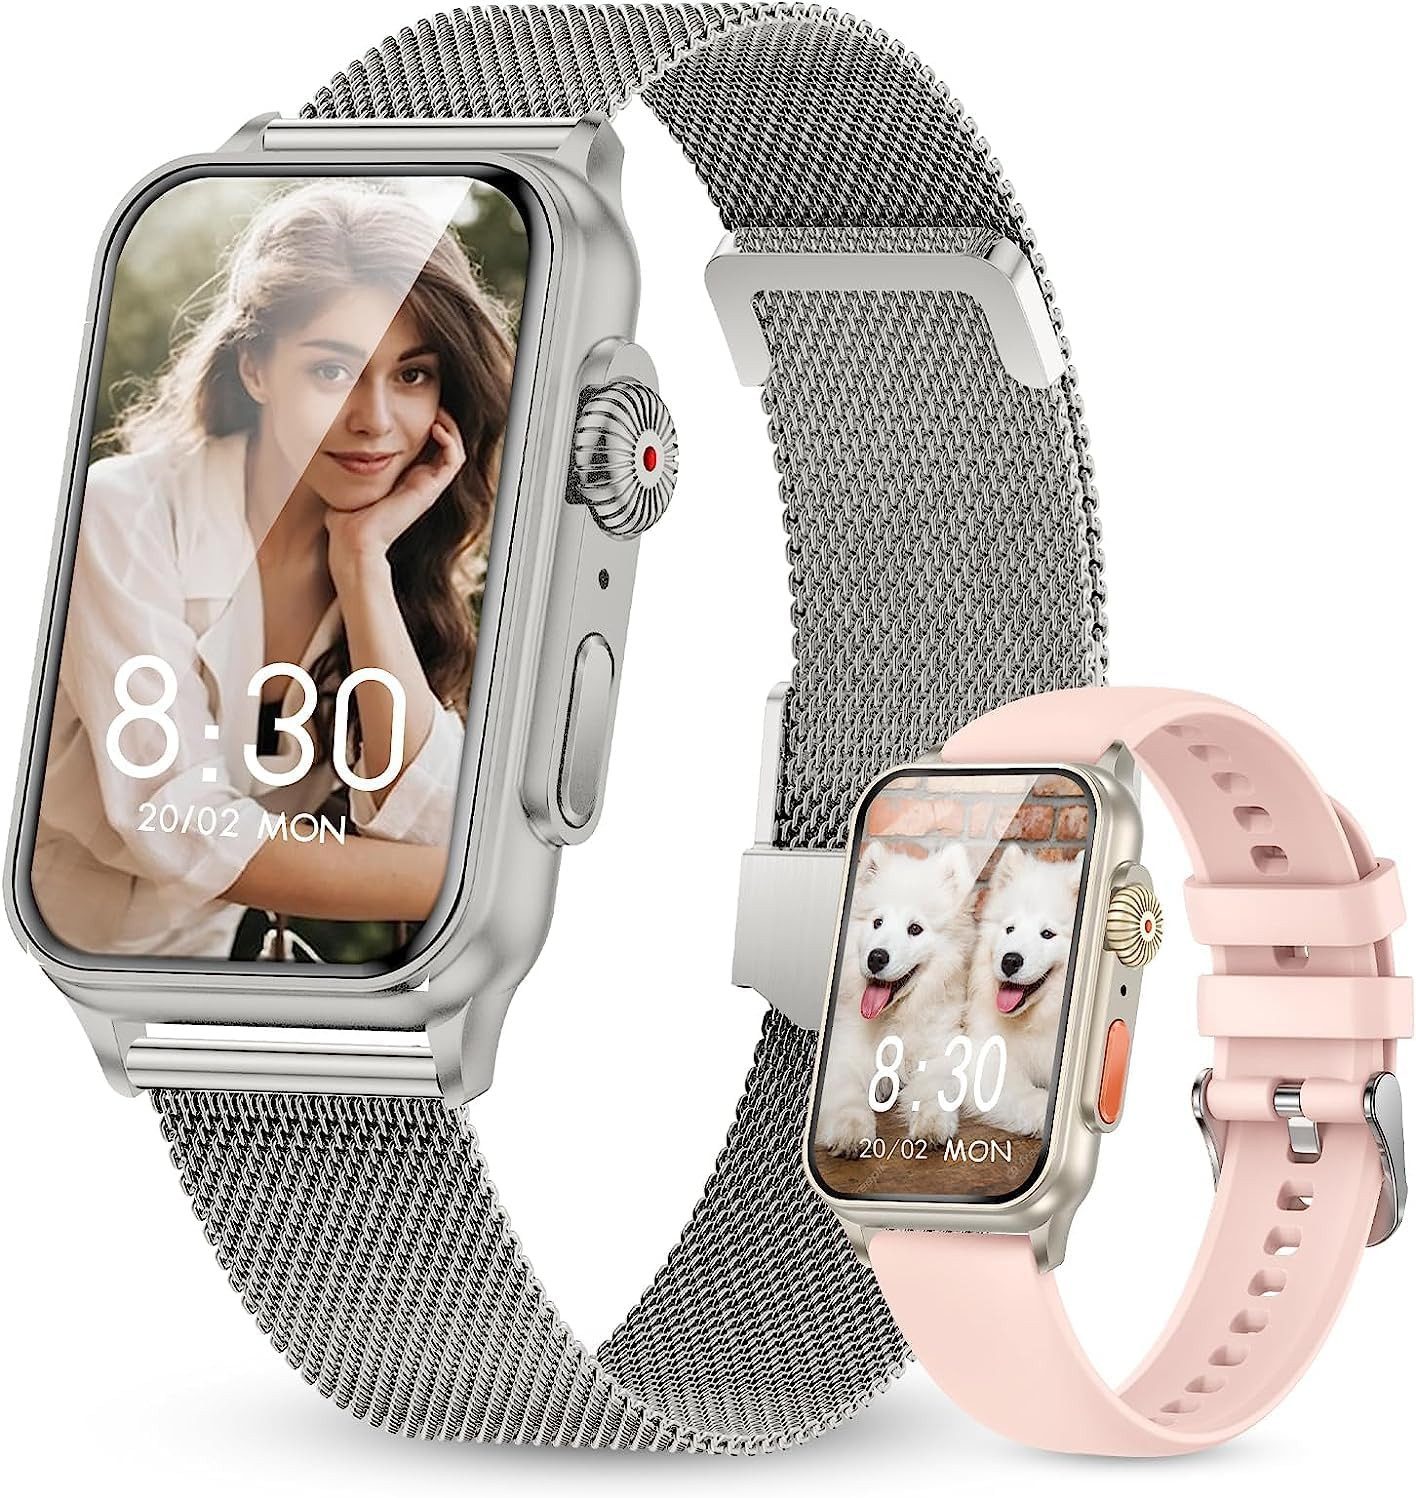 YEDASAH Personalisierbarkeit Smartwatch (1,57 Zoll, Android, iOS), mit Telefonfunktion,IP68 Wasserdicht Sportuhr Schrittzähler Pulsmesser